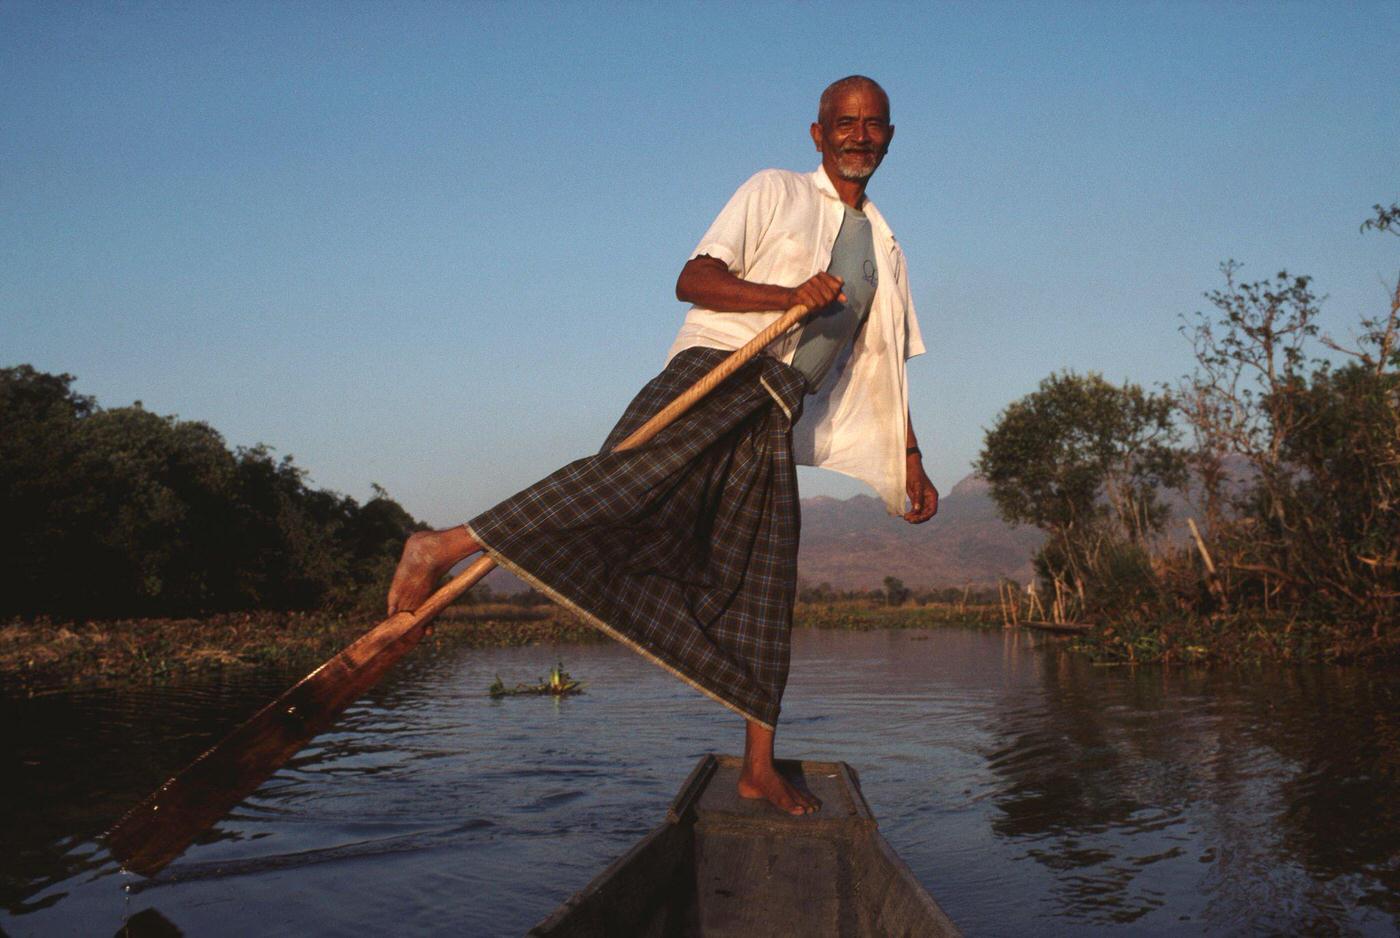 Maung Oo, a boatman leg rowing on Inle Lake in Burma, 1988.